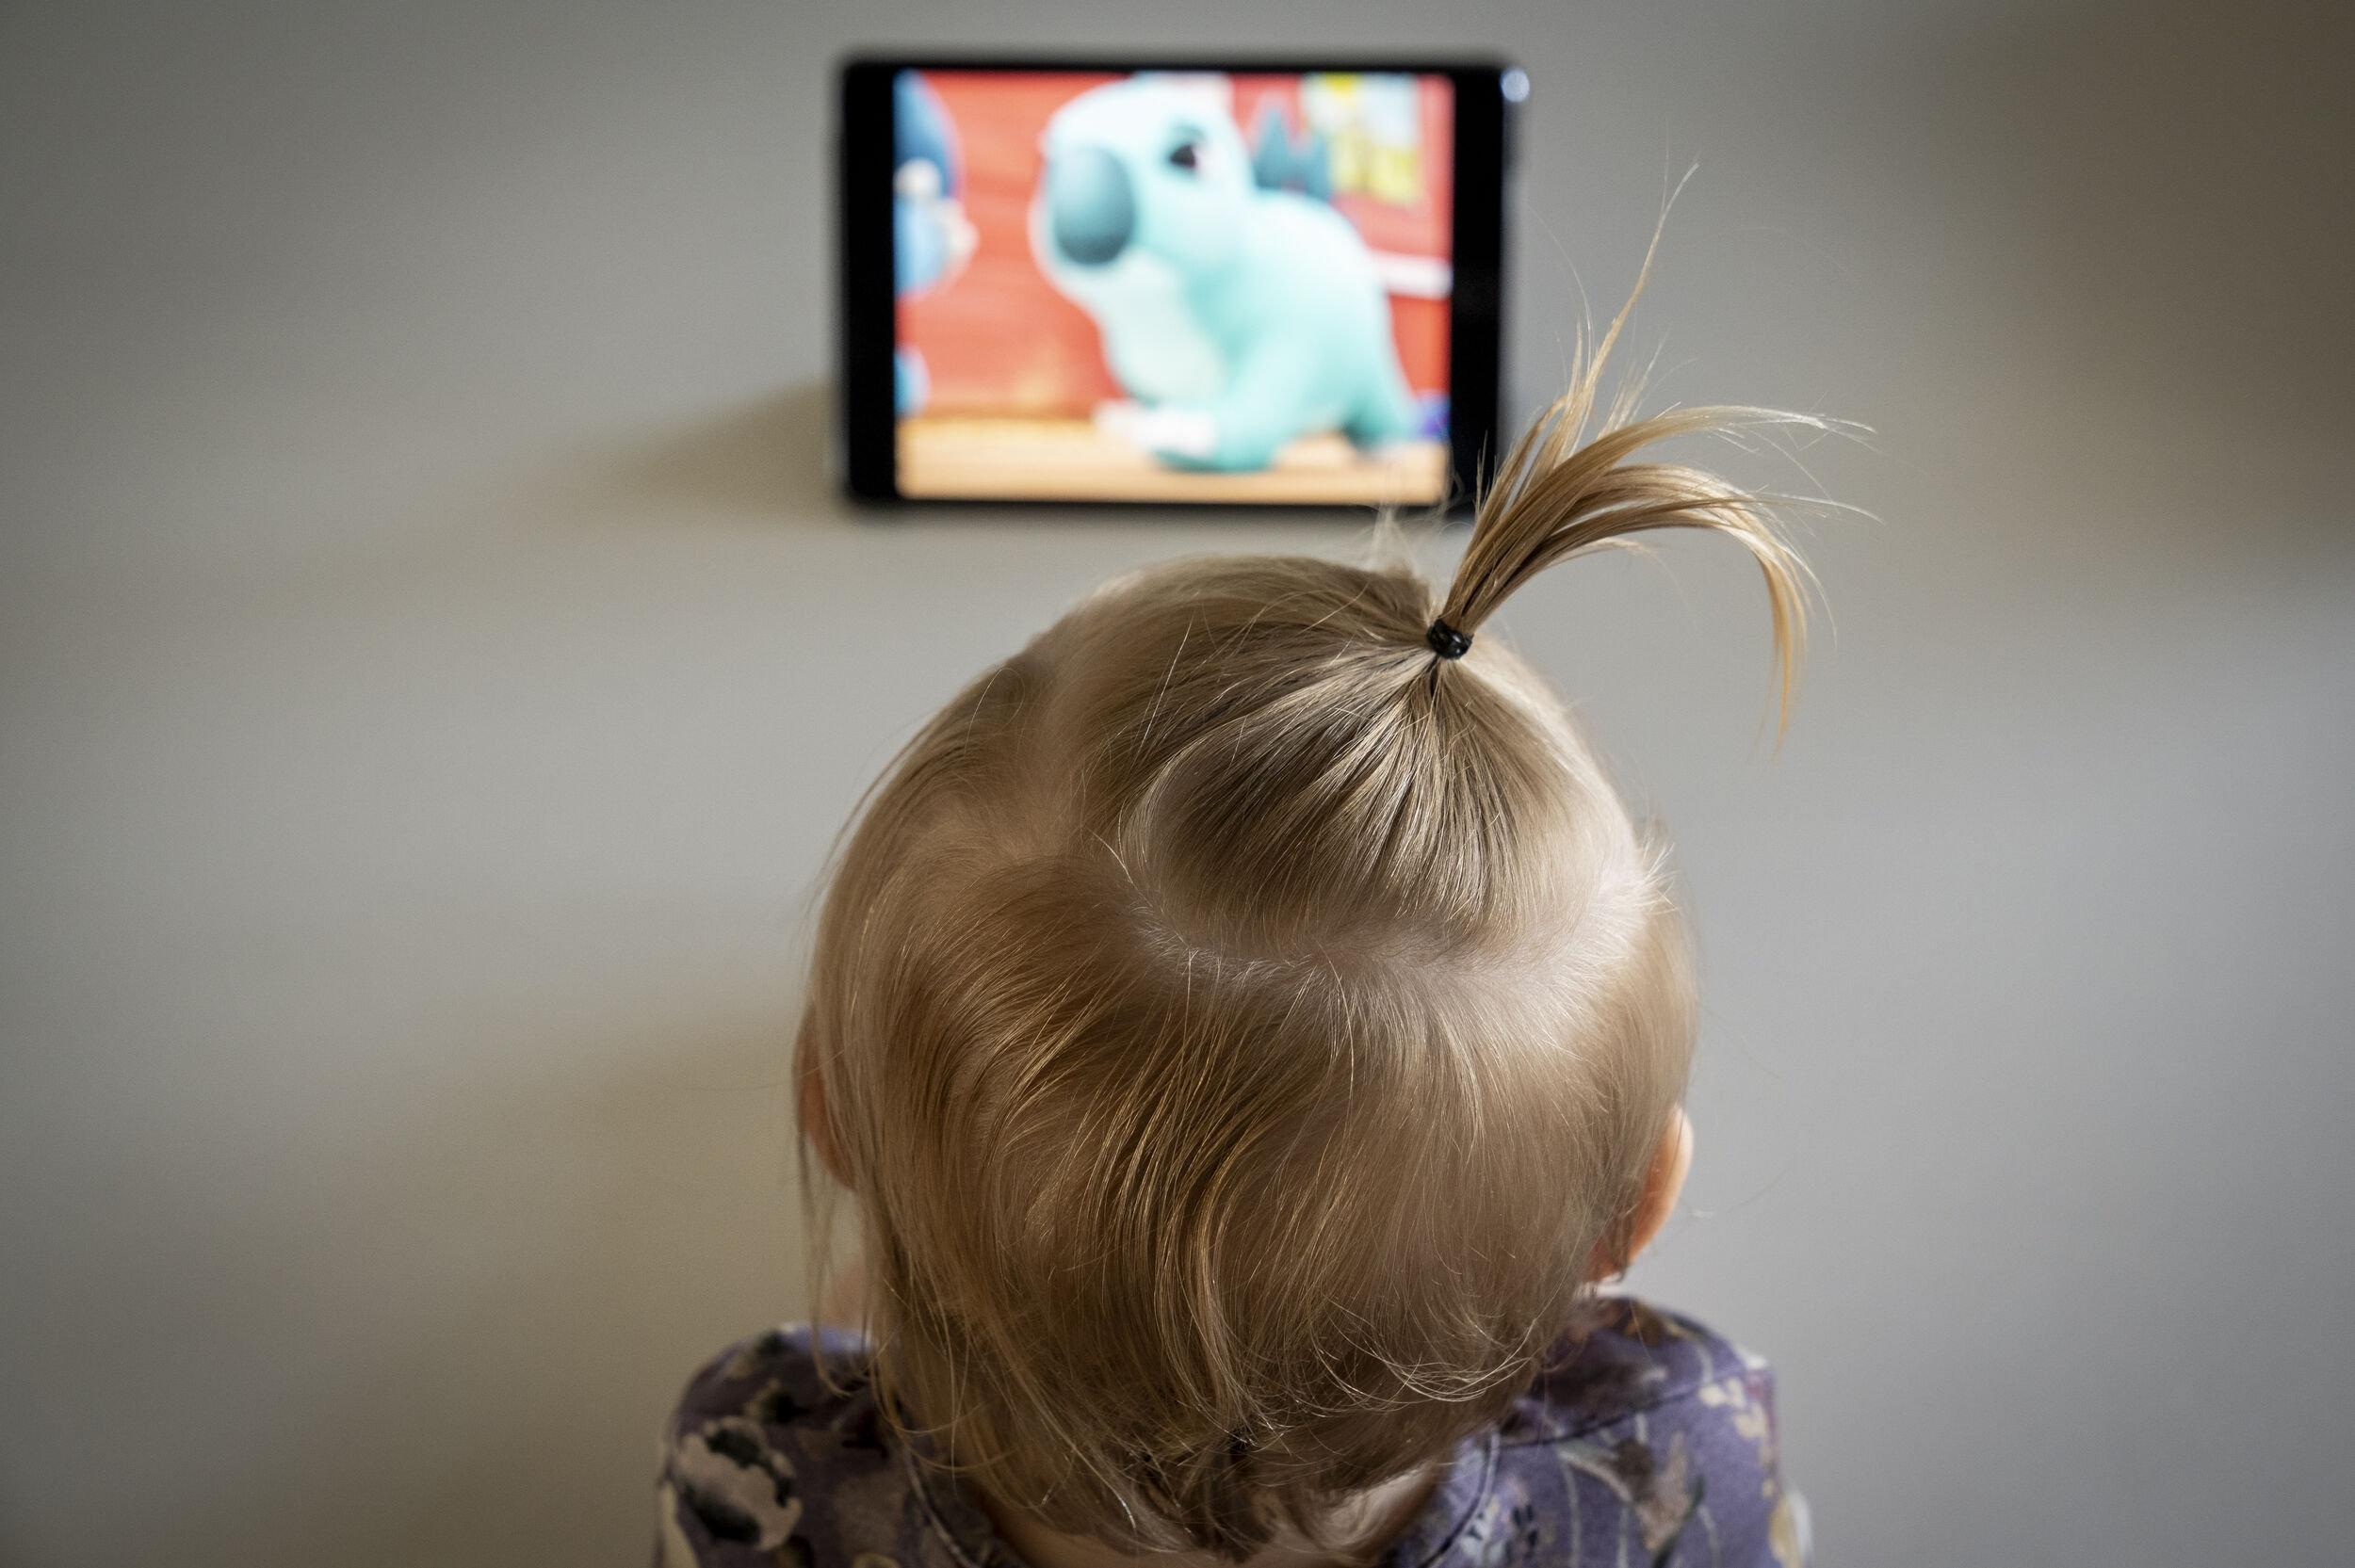 Børn under to år bør ikke sidde alene foran en skærm, har Sundhedsstyrelsen anbefalet. Med en ny aftale vil et flertal i Folketinget sikre, at brugen af skærme begrænses i dagtilbud. (Arkivfoto).